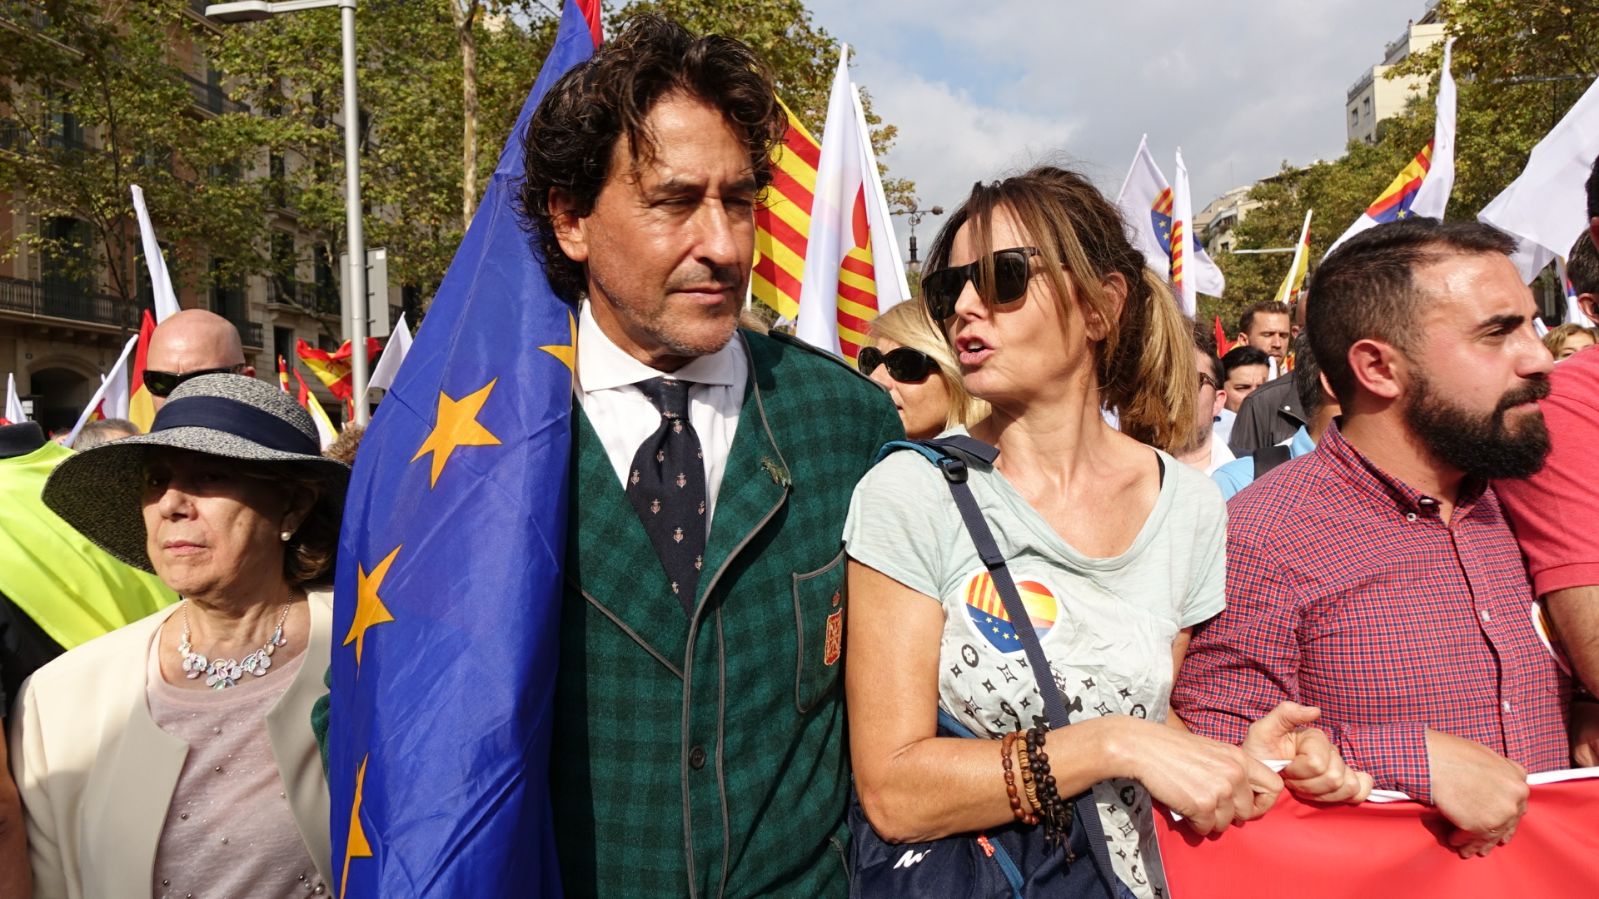 Un candidato a la alcaldía ficha a Álvaro Marichalar por Barcelona (no es Vox)